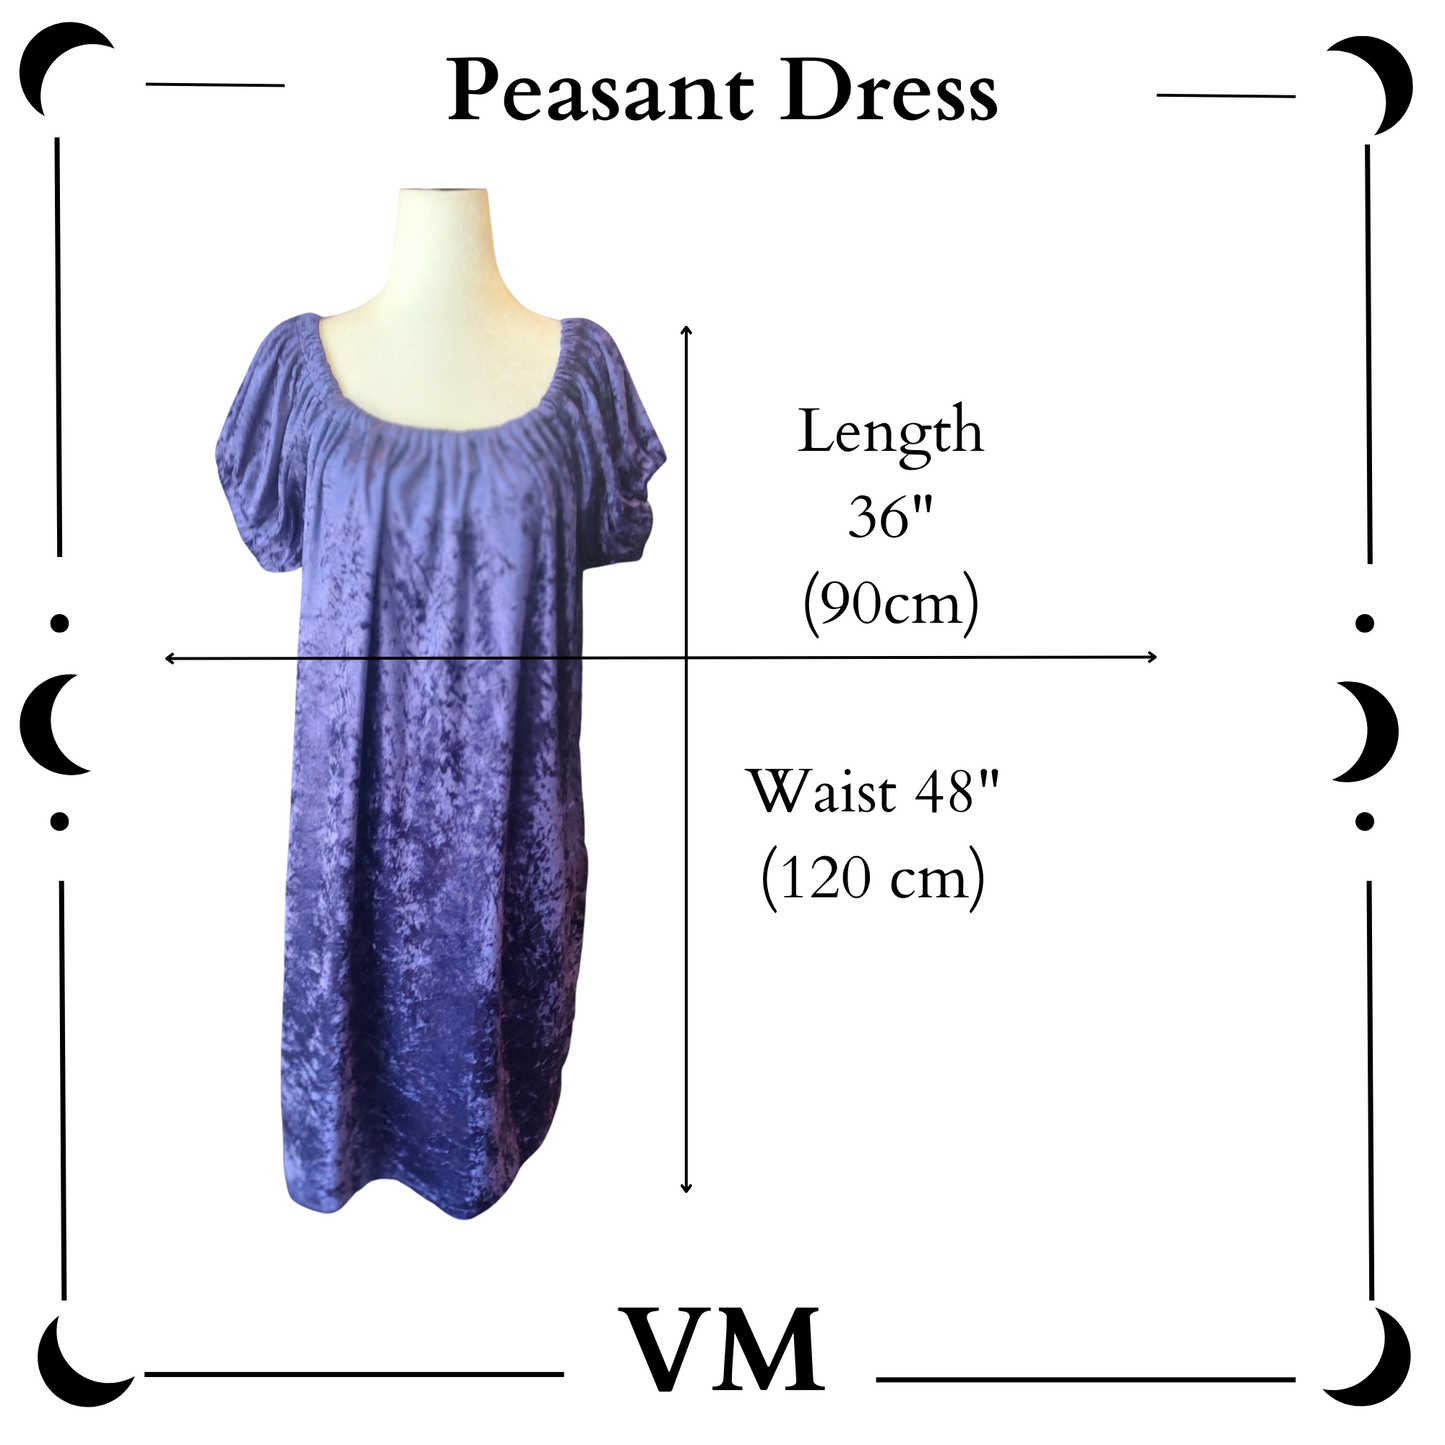 The VM Velvet Peasant Dress